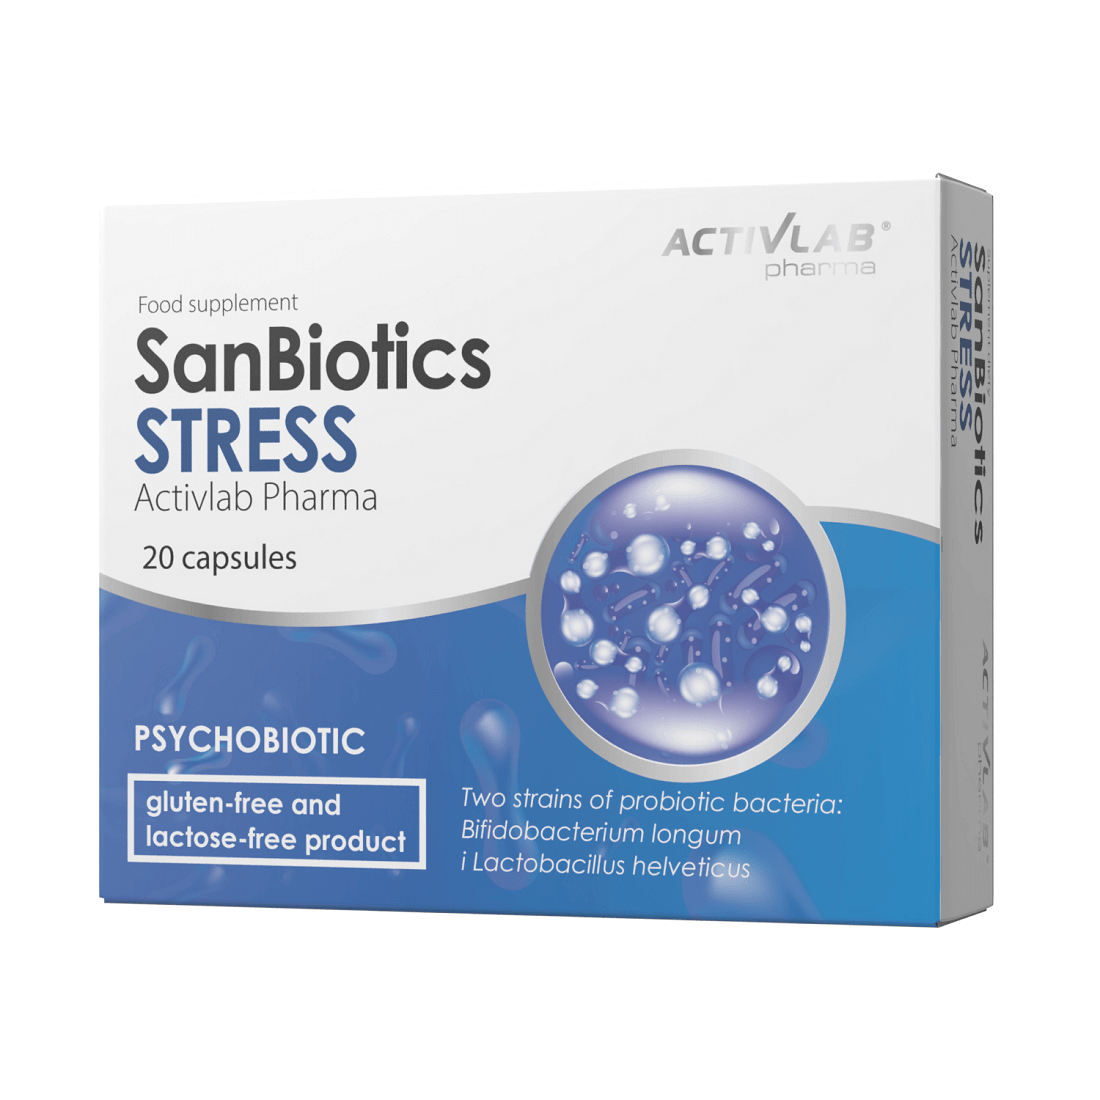 Activlab Pharma SanBiotics Stress